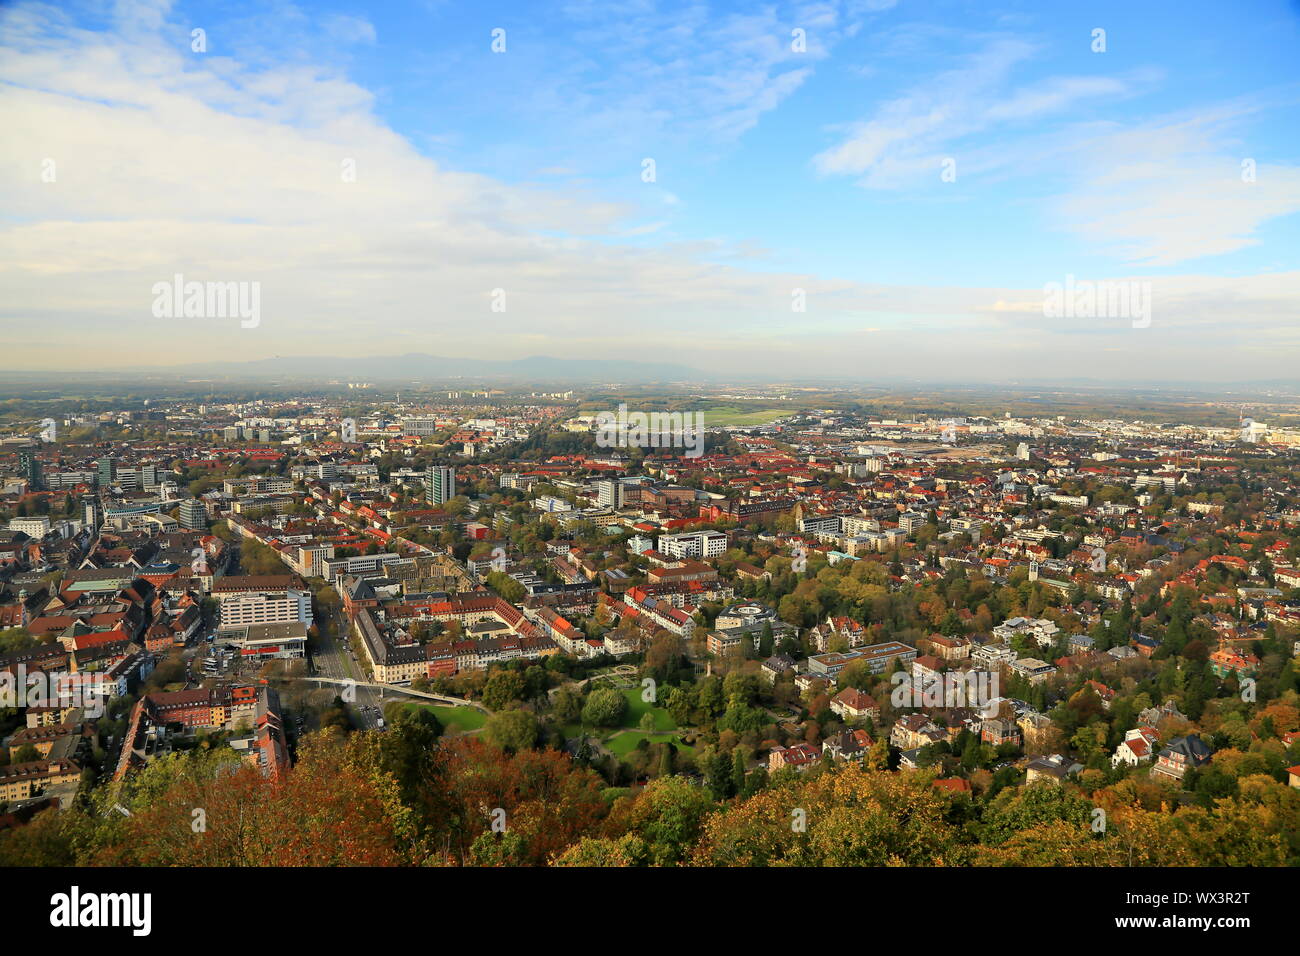 Freiburg ist eine Stadt in Deutschland, mit vielen historischen Sehenswürdigkeiten Stockfoto